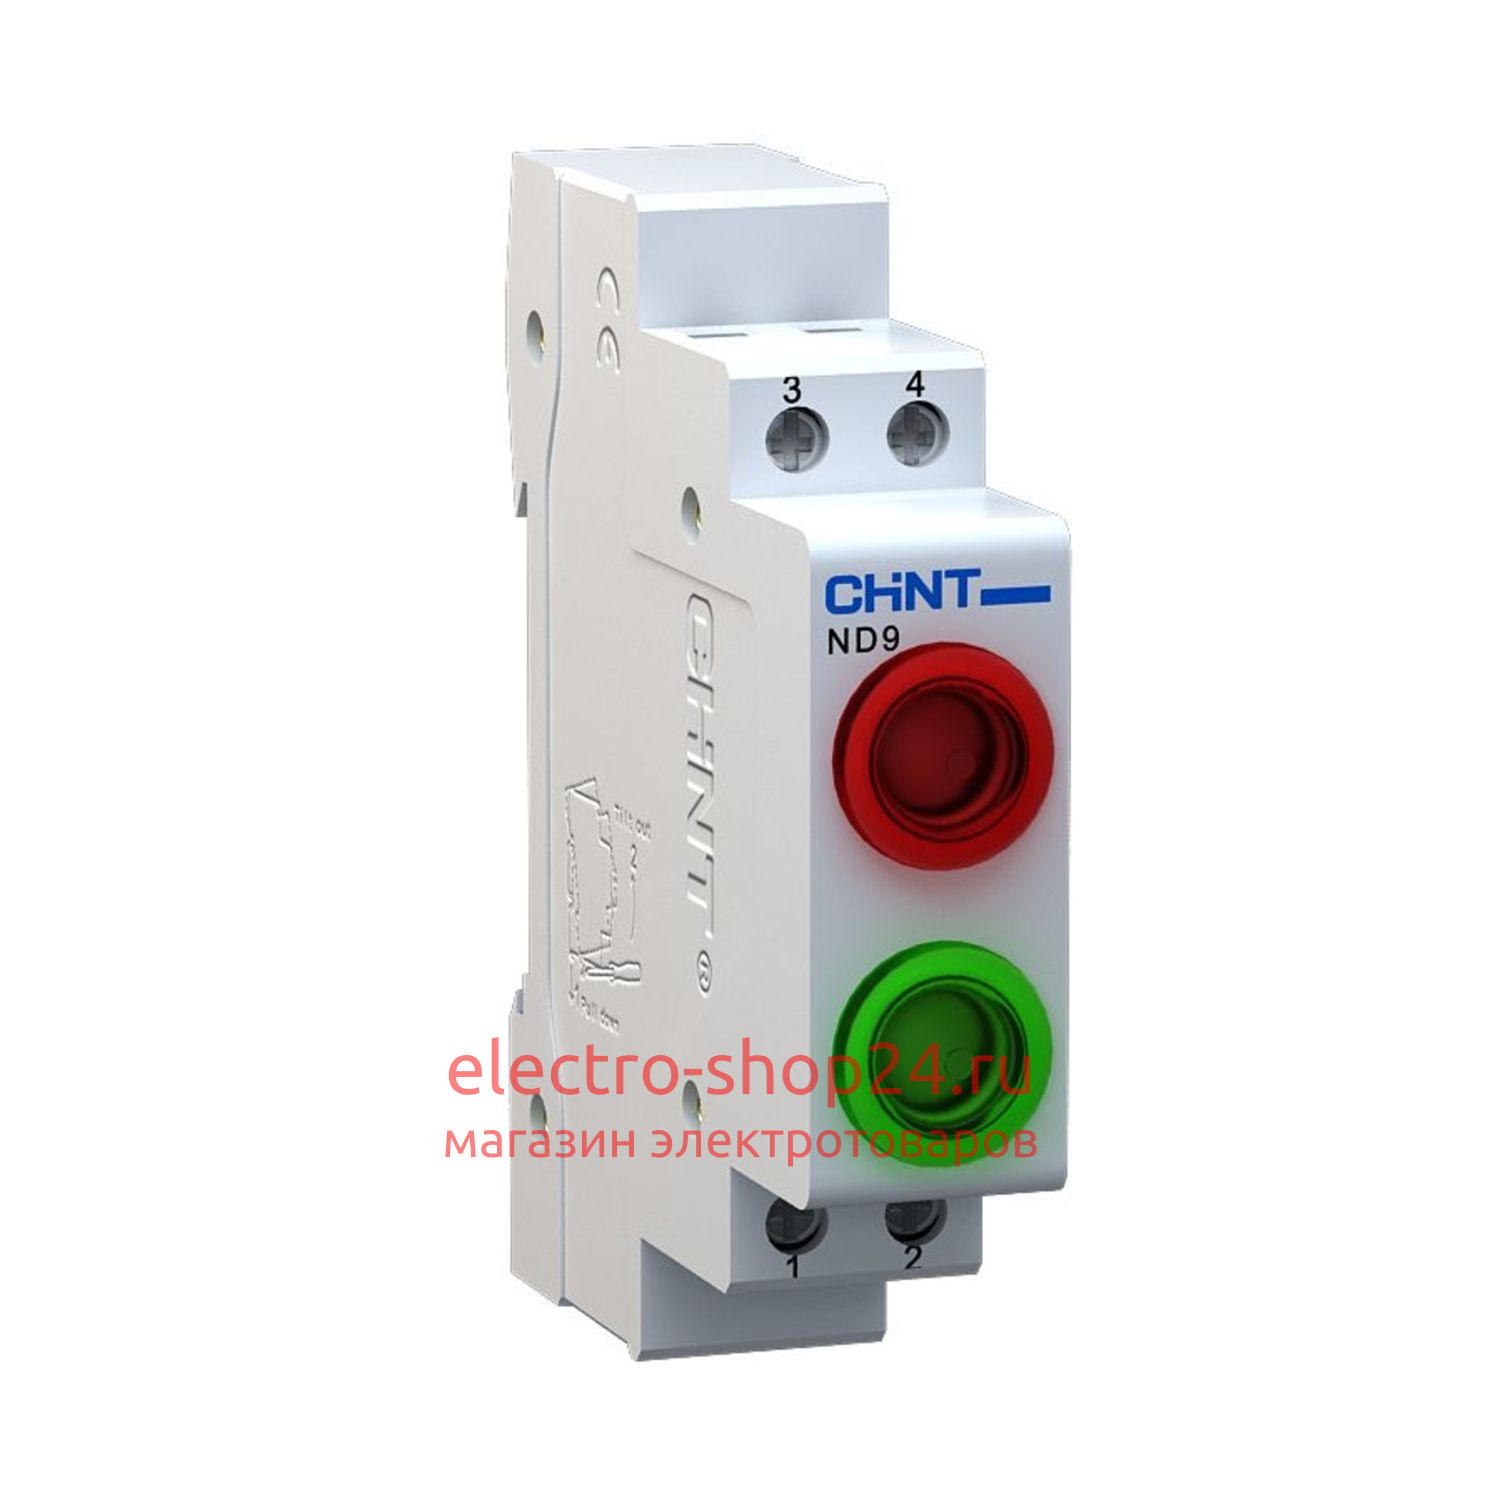 Индикатор ND9-2/gr красный+зелёный AC/DC230В (LED) (R) CHINT 594138 594138 - магазин электротехники Electroshop